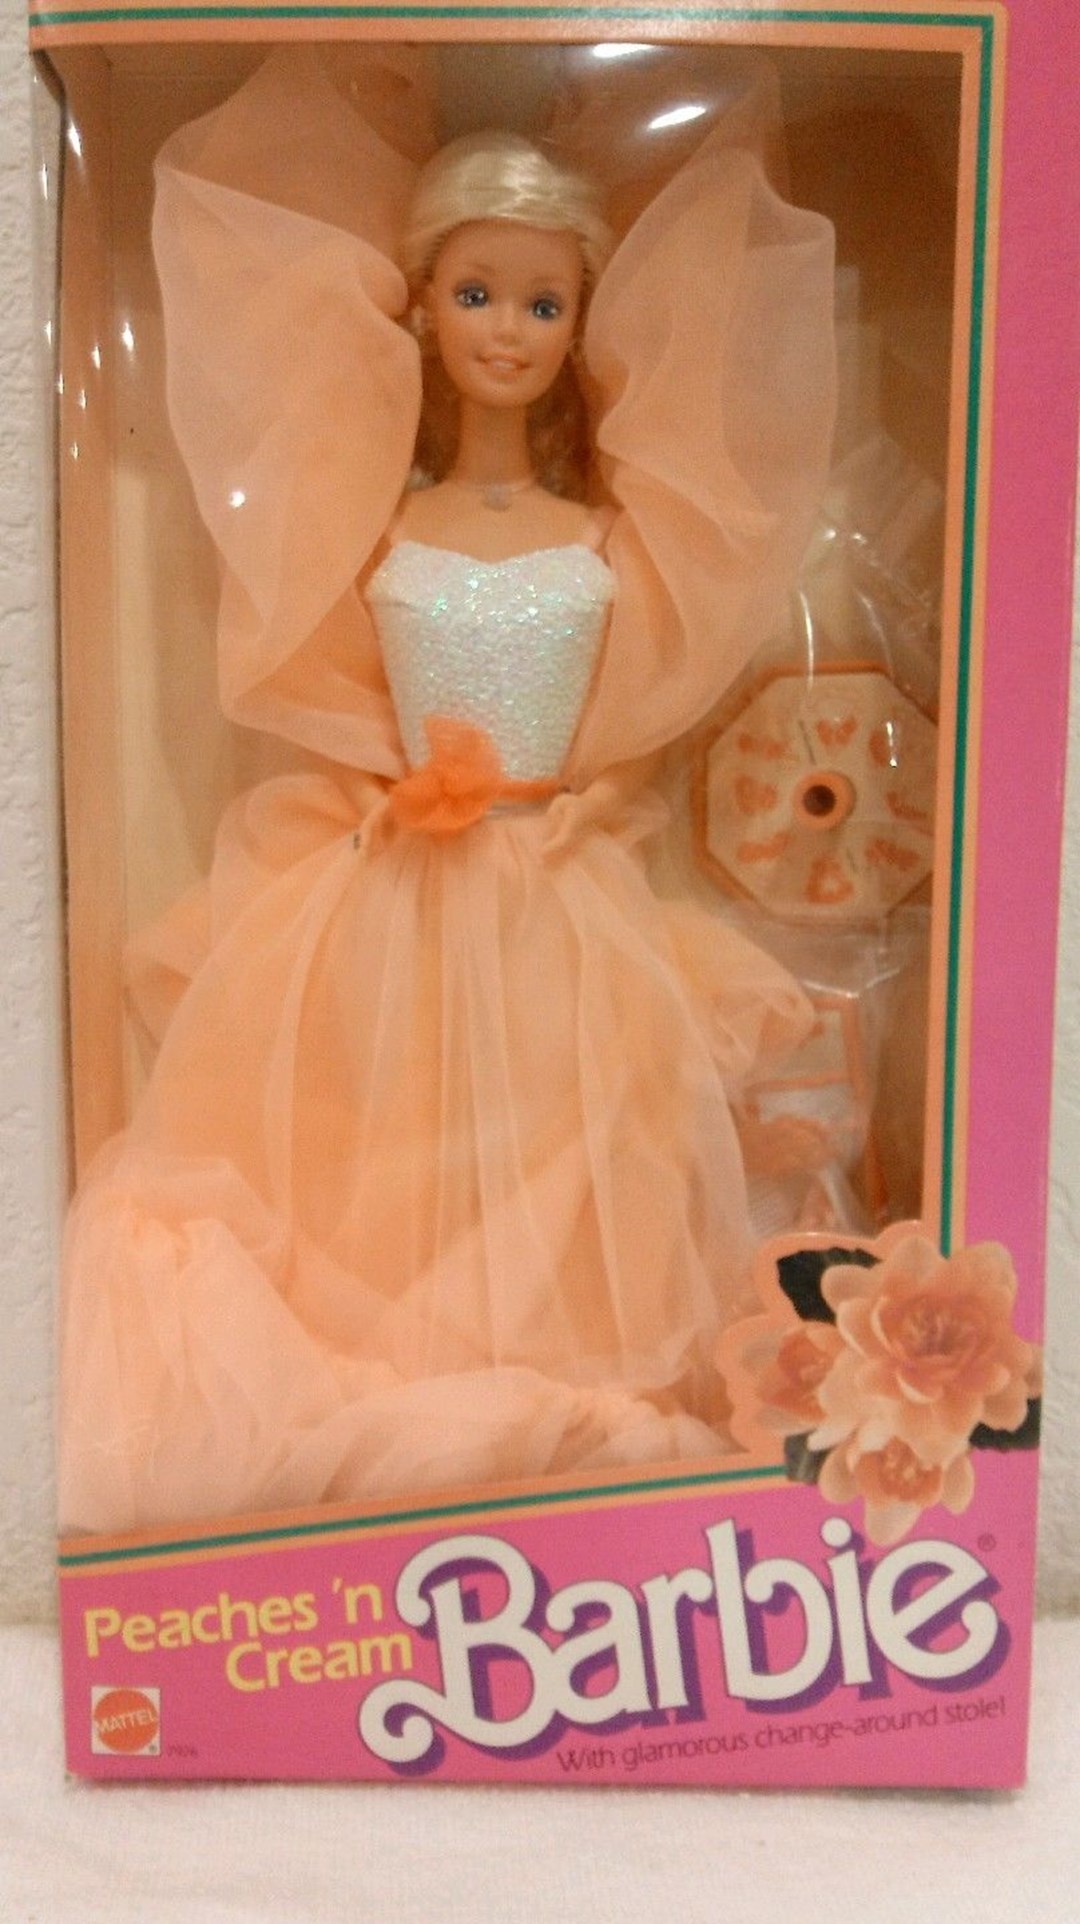 Peaches 'n cream-Barbie. Hun er 1.200-1.500 kroner værd i dag